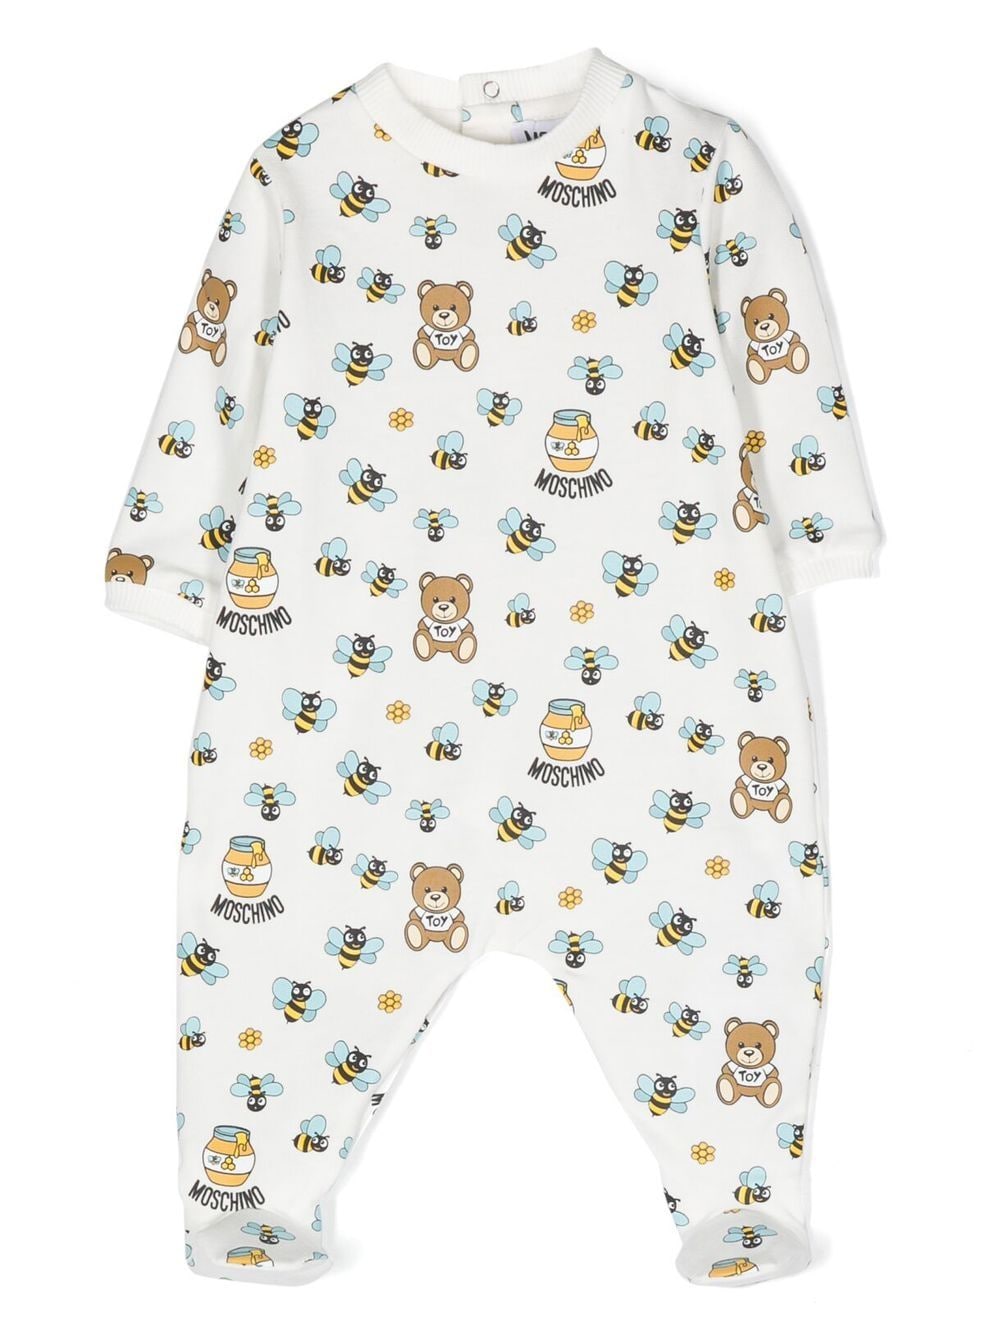 White baby pajamas with print